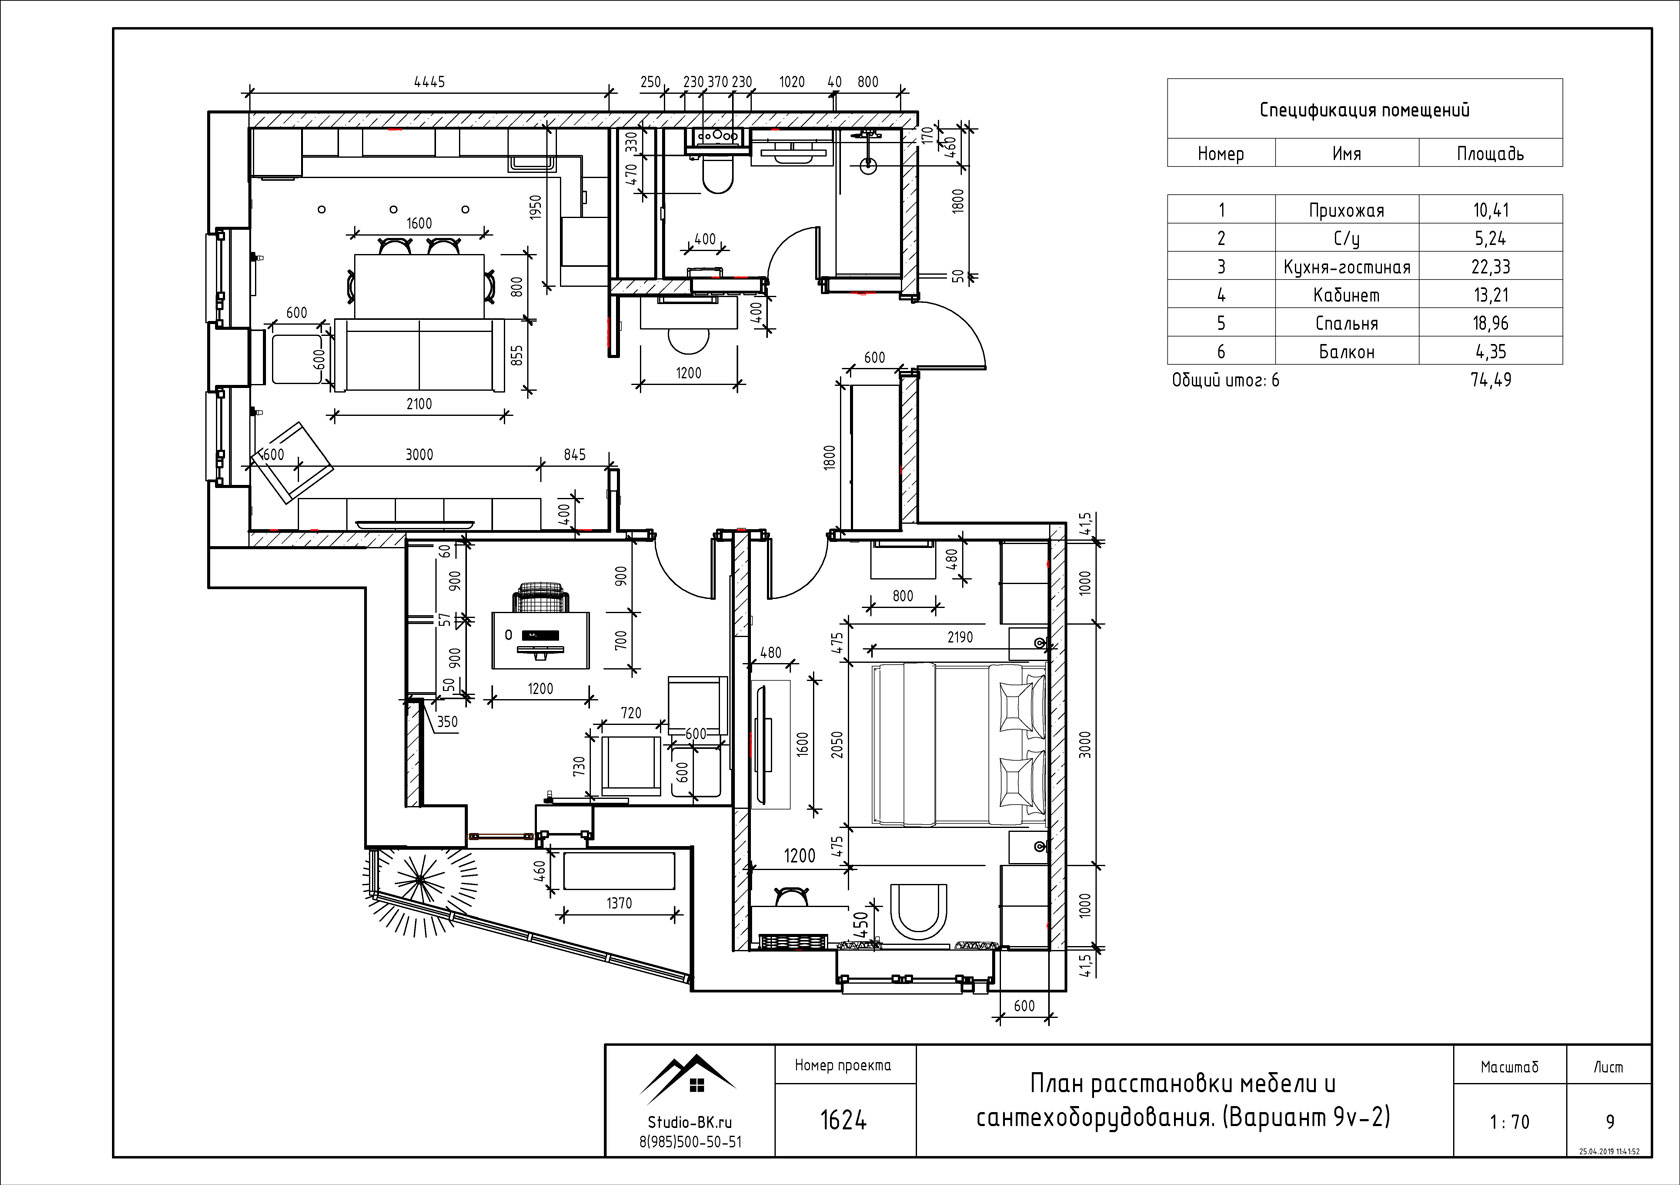 Пример дизайн проекта дома в pdf